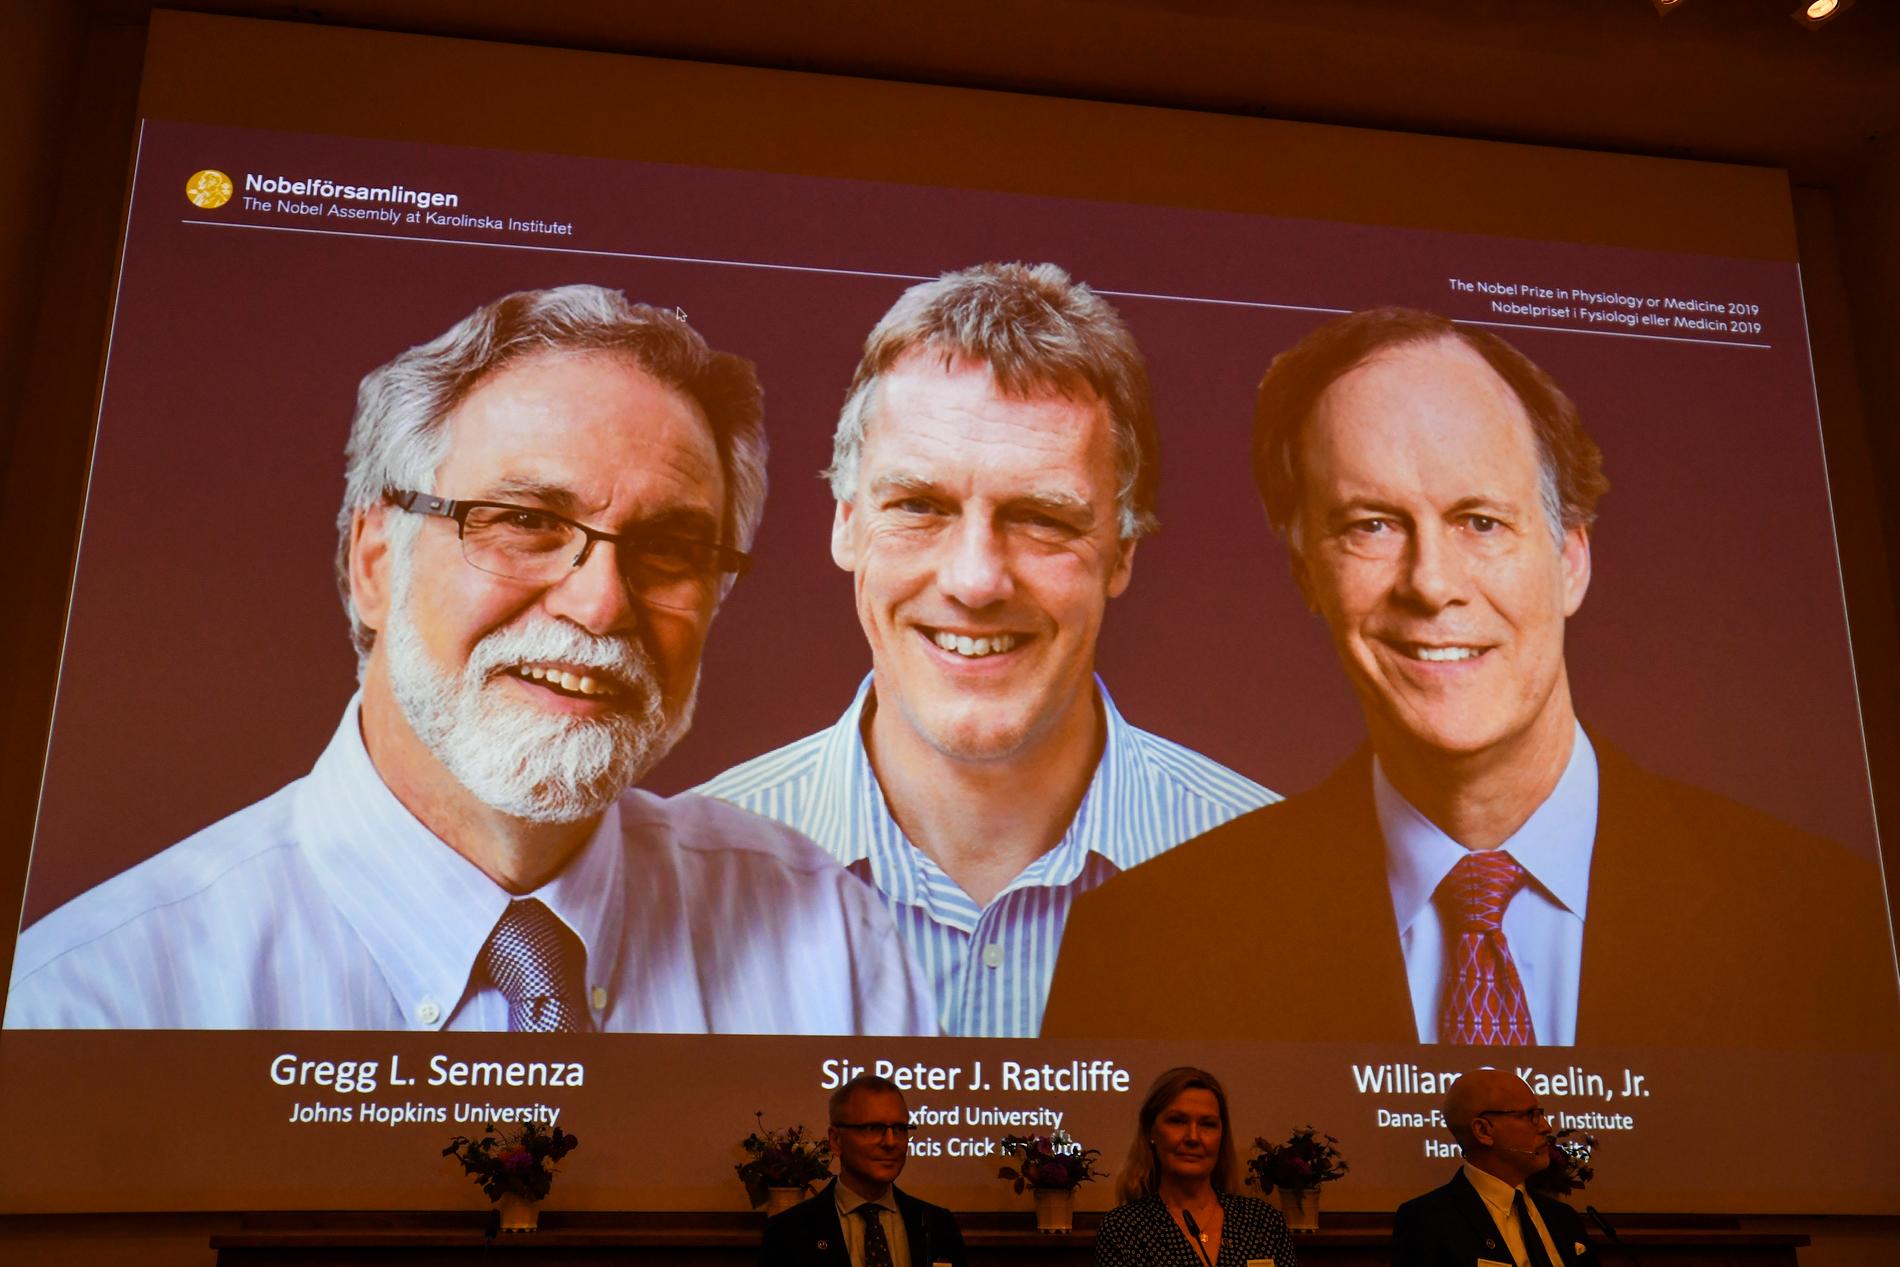 Årets Nobelpris går till Gregg L. Semenza, Sir Peter J. Ratcliffe och William G. Kaelinför sin forskning om celler.